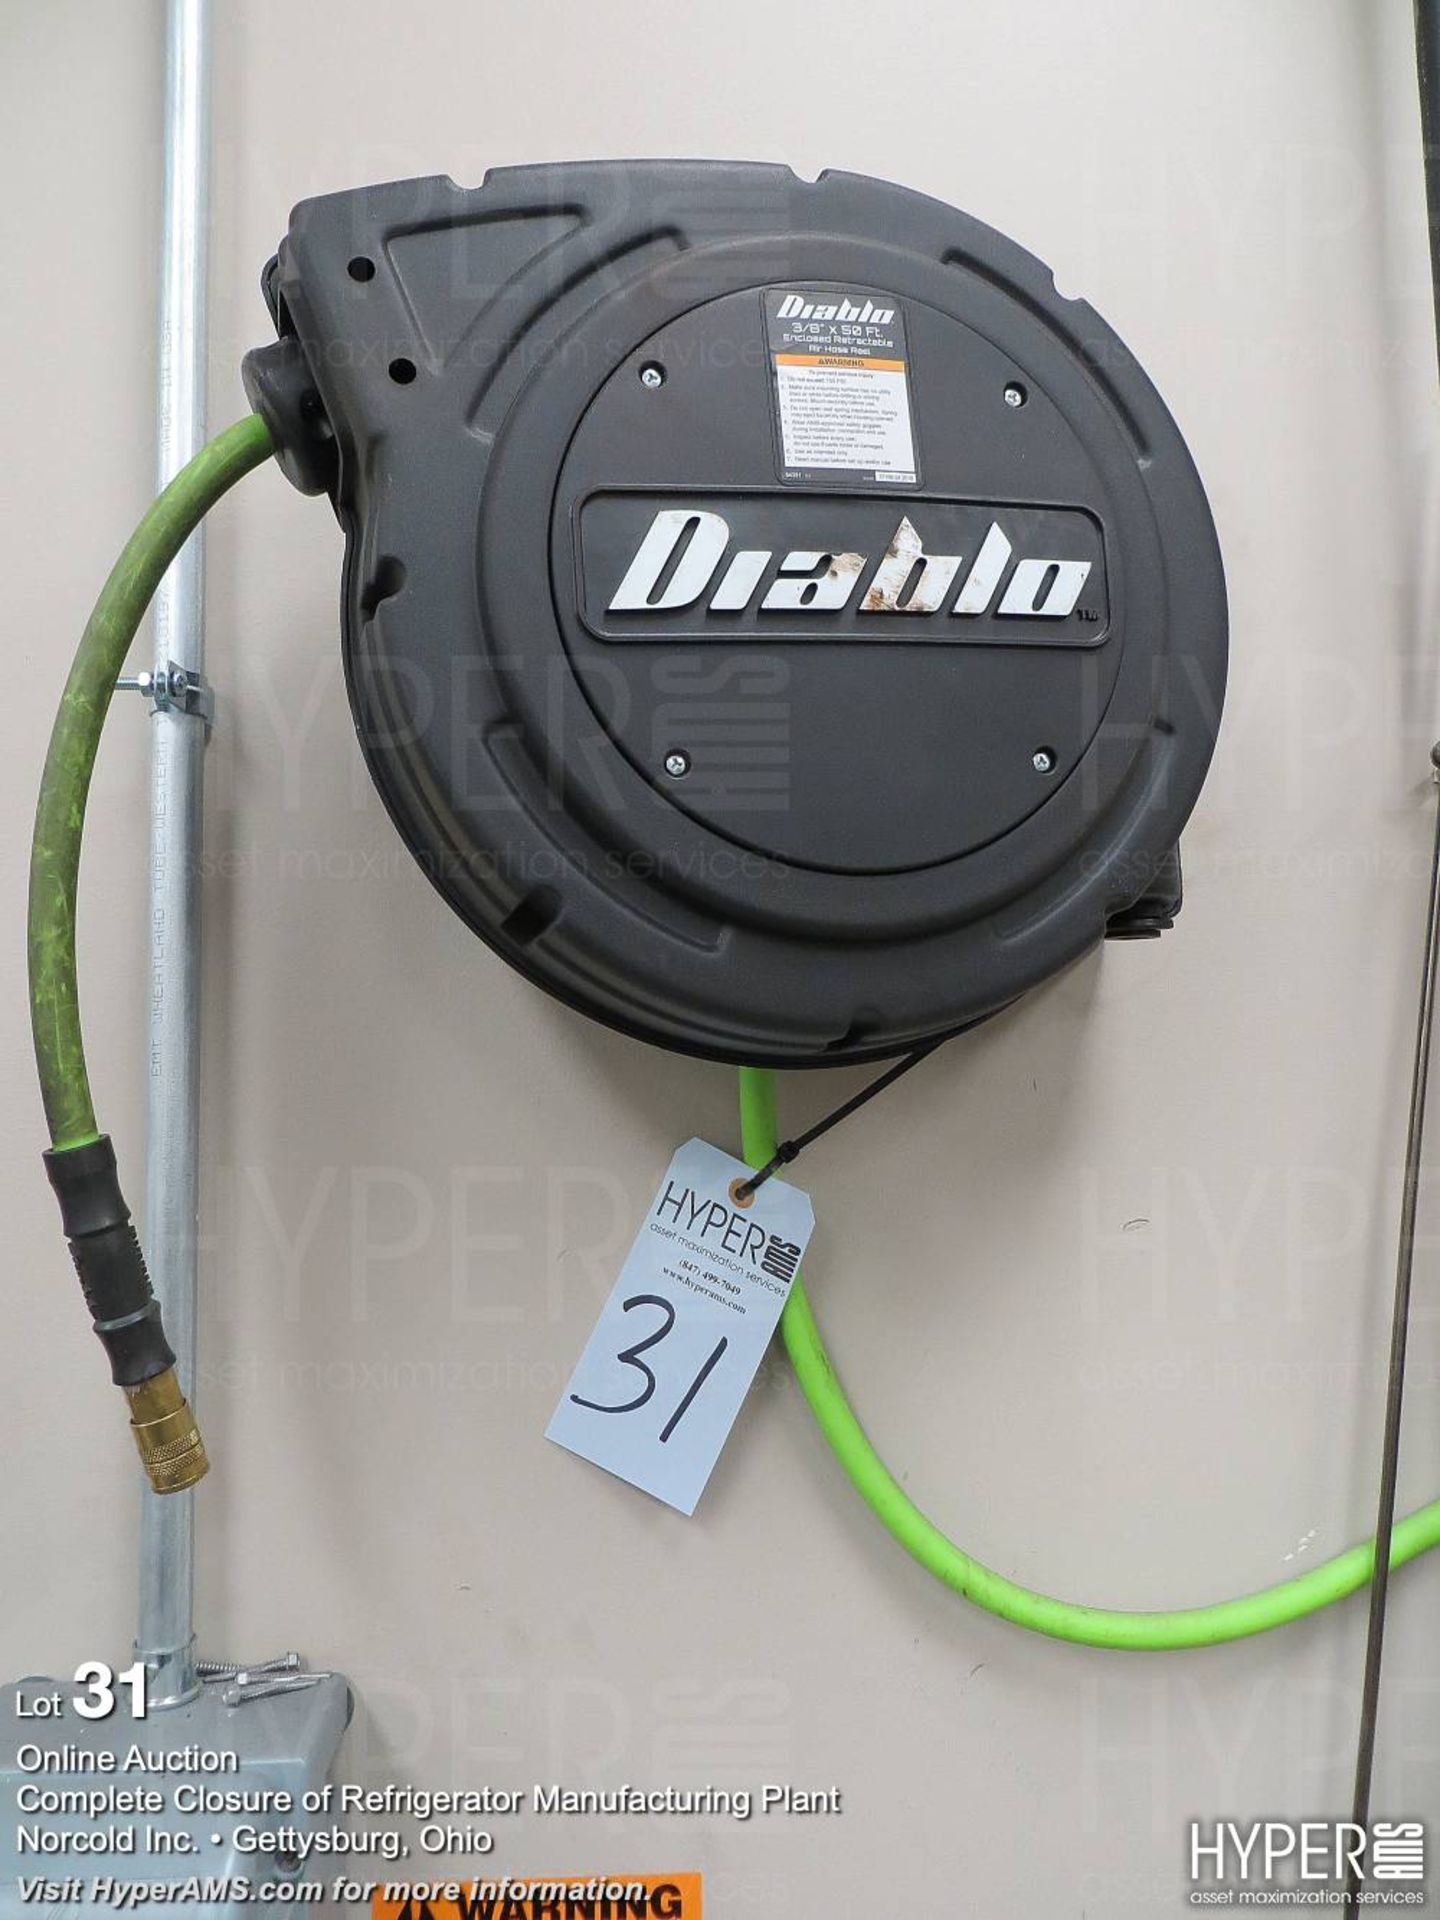 Diablo 3/8 in X 50ft retractable air hose